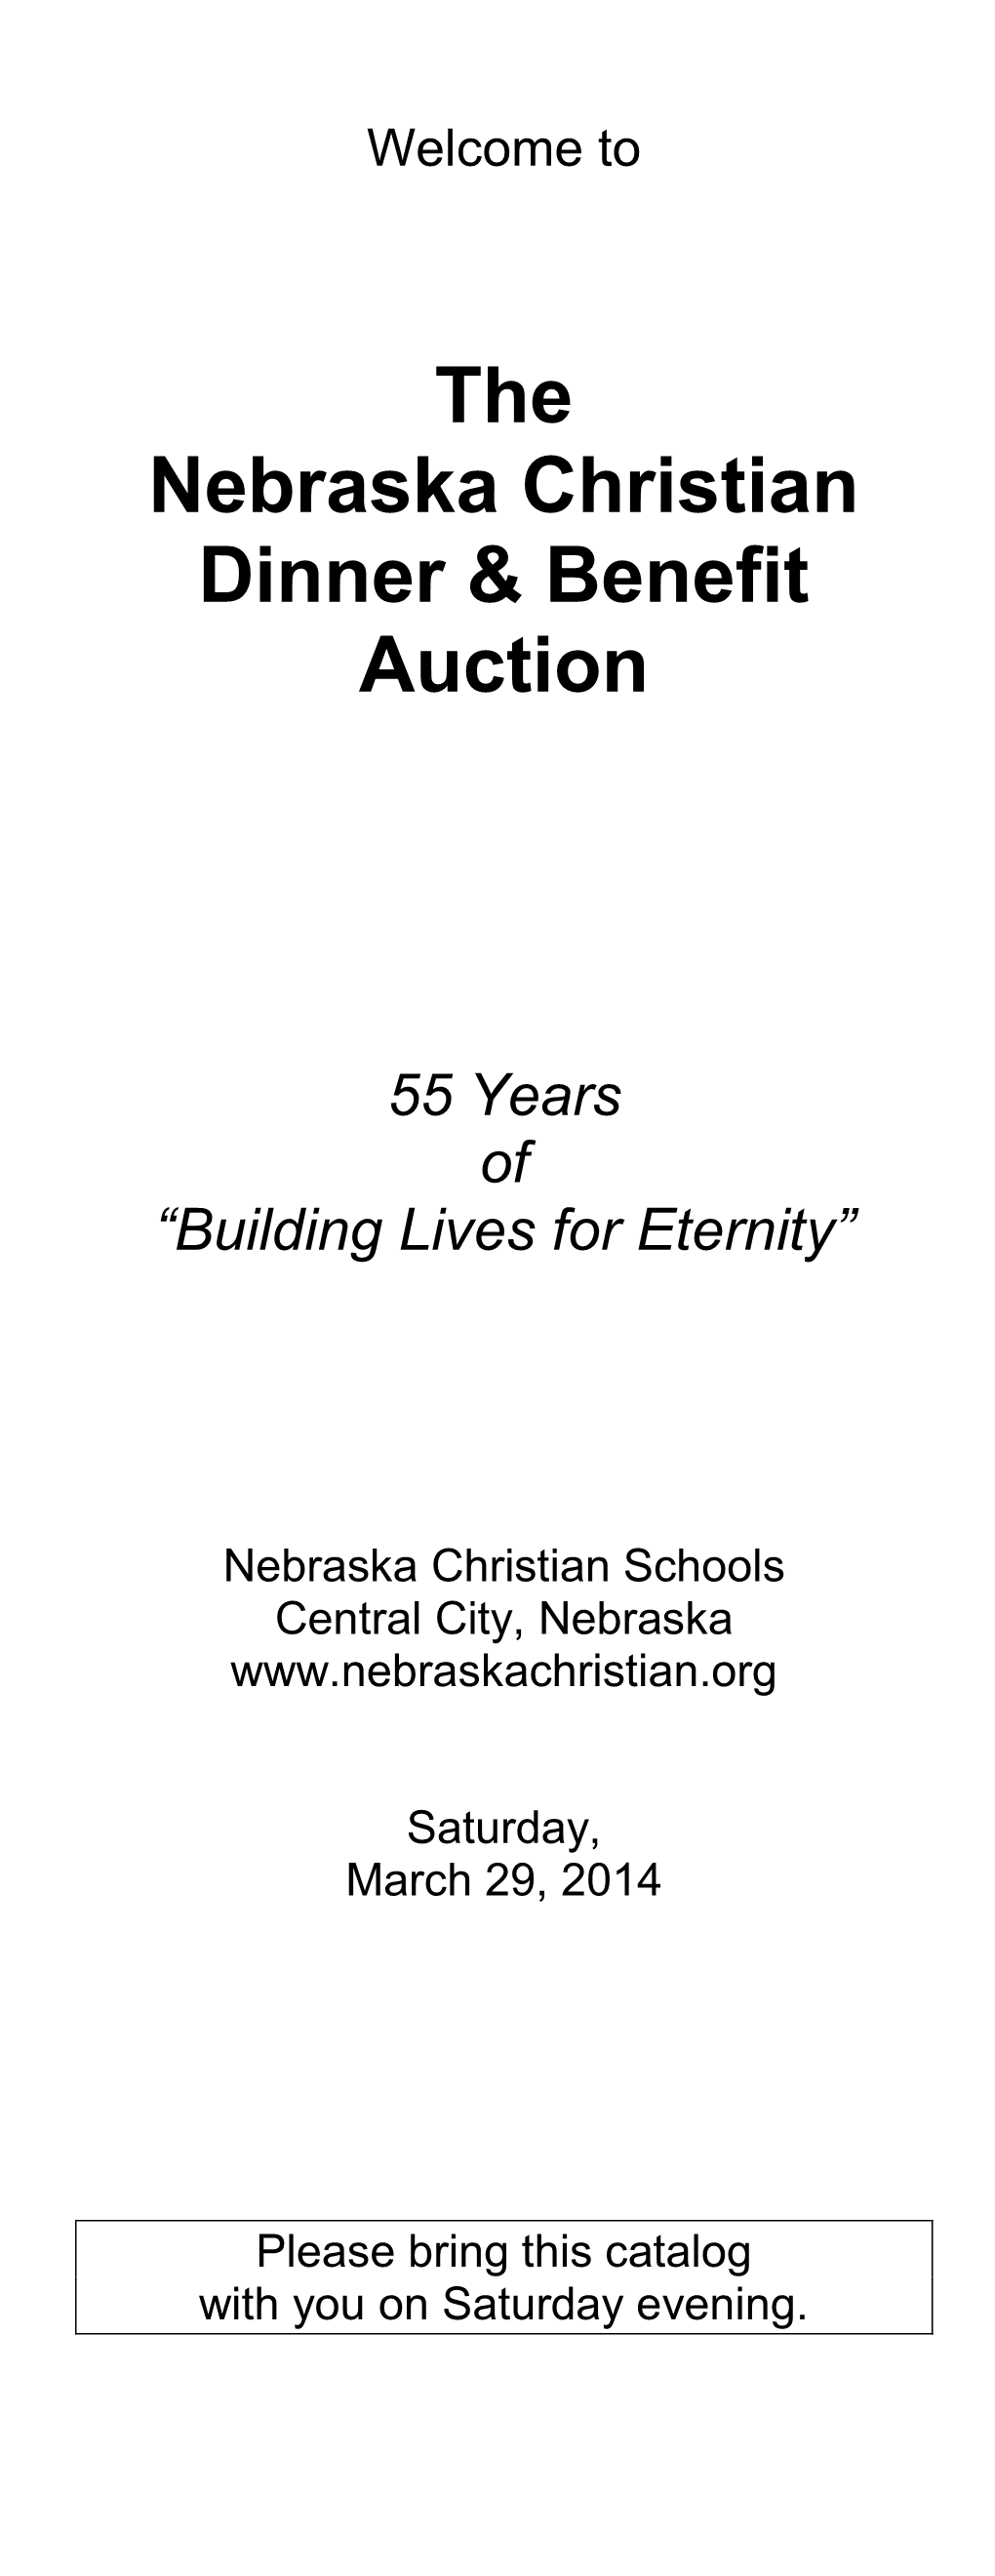 The Nebraska Christian Dinner & Benefit Auction